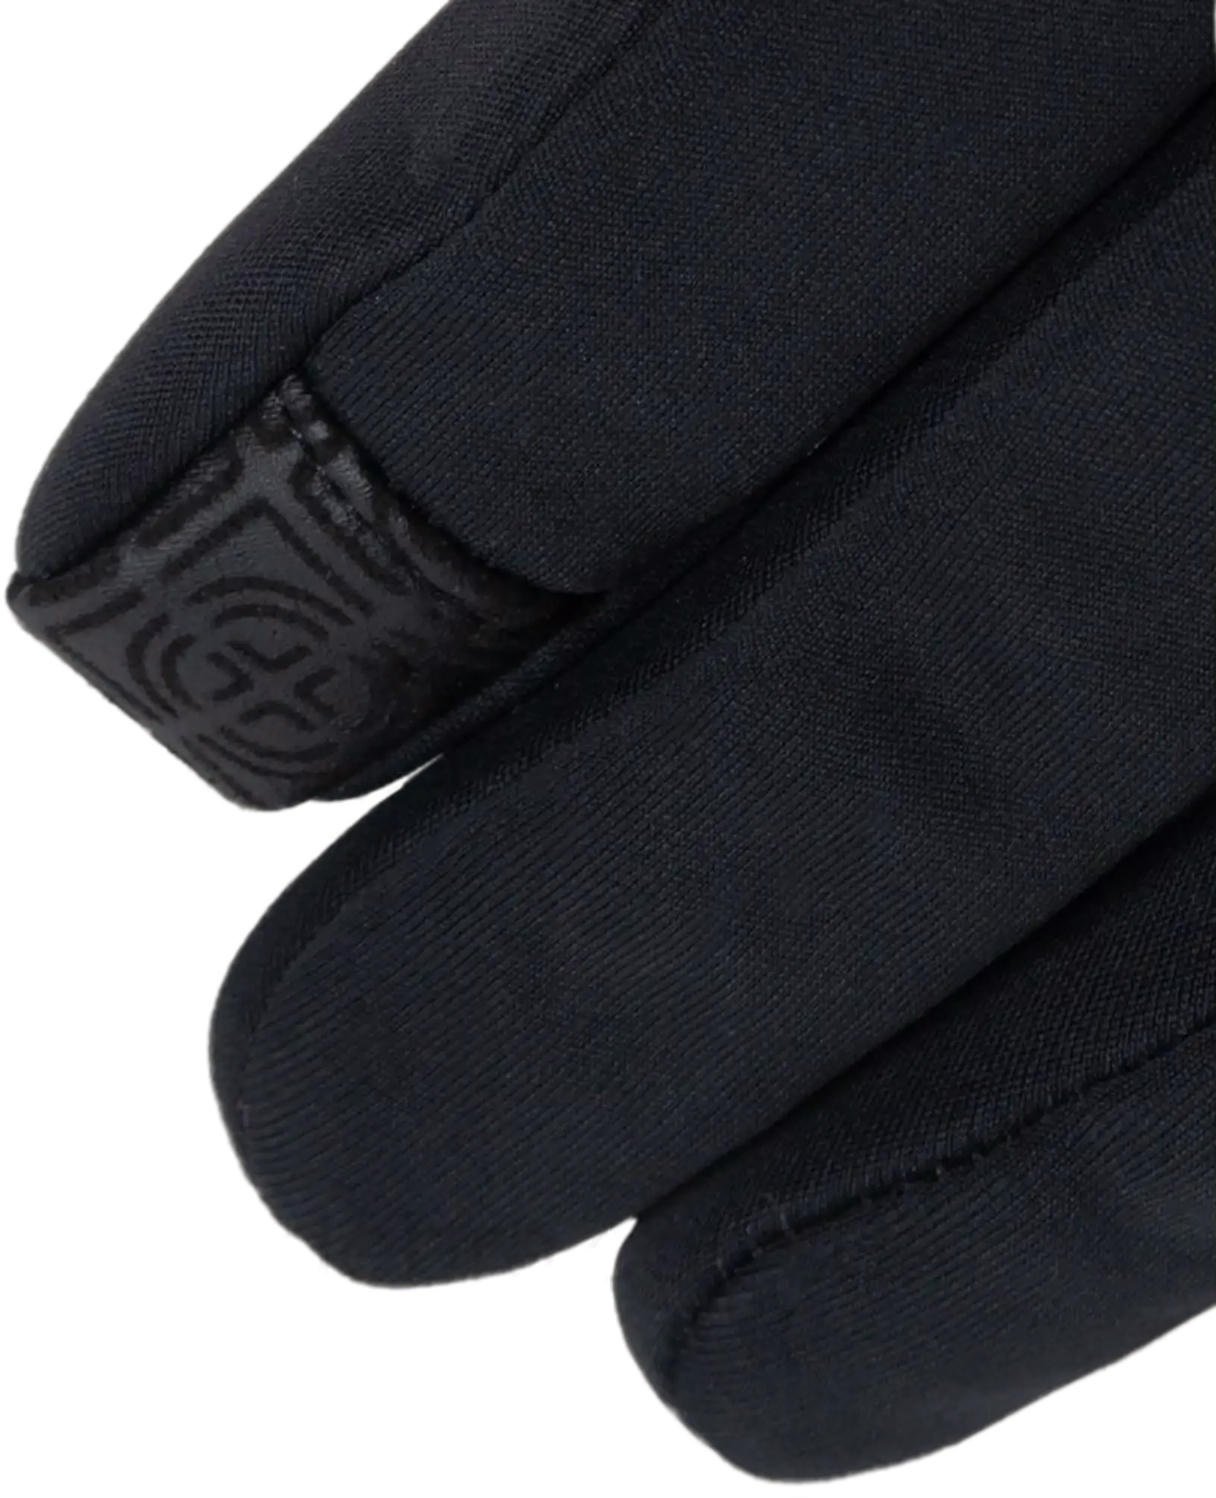 Перчатки Trekmates Rigg Glove TM-006312 black - M - черный фото 3